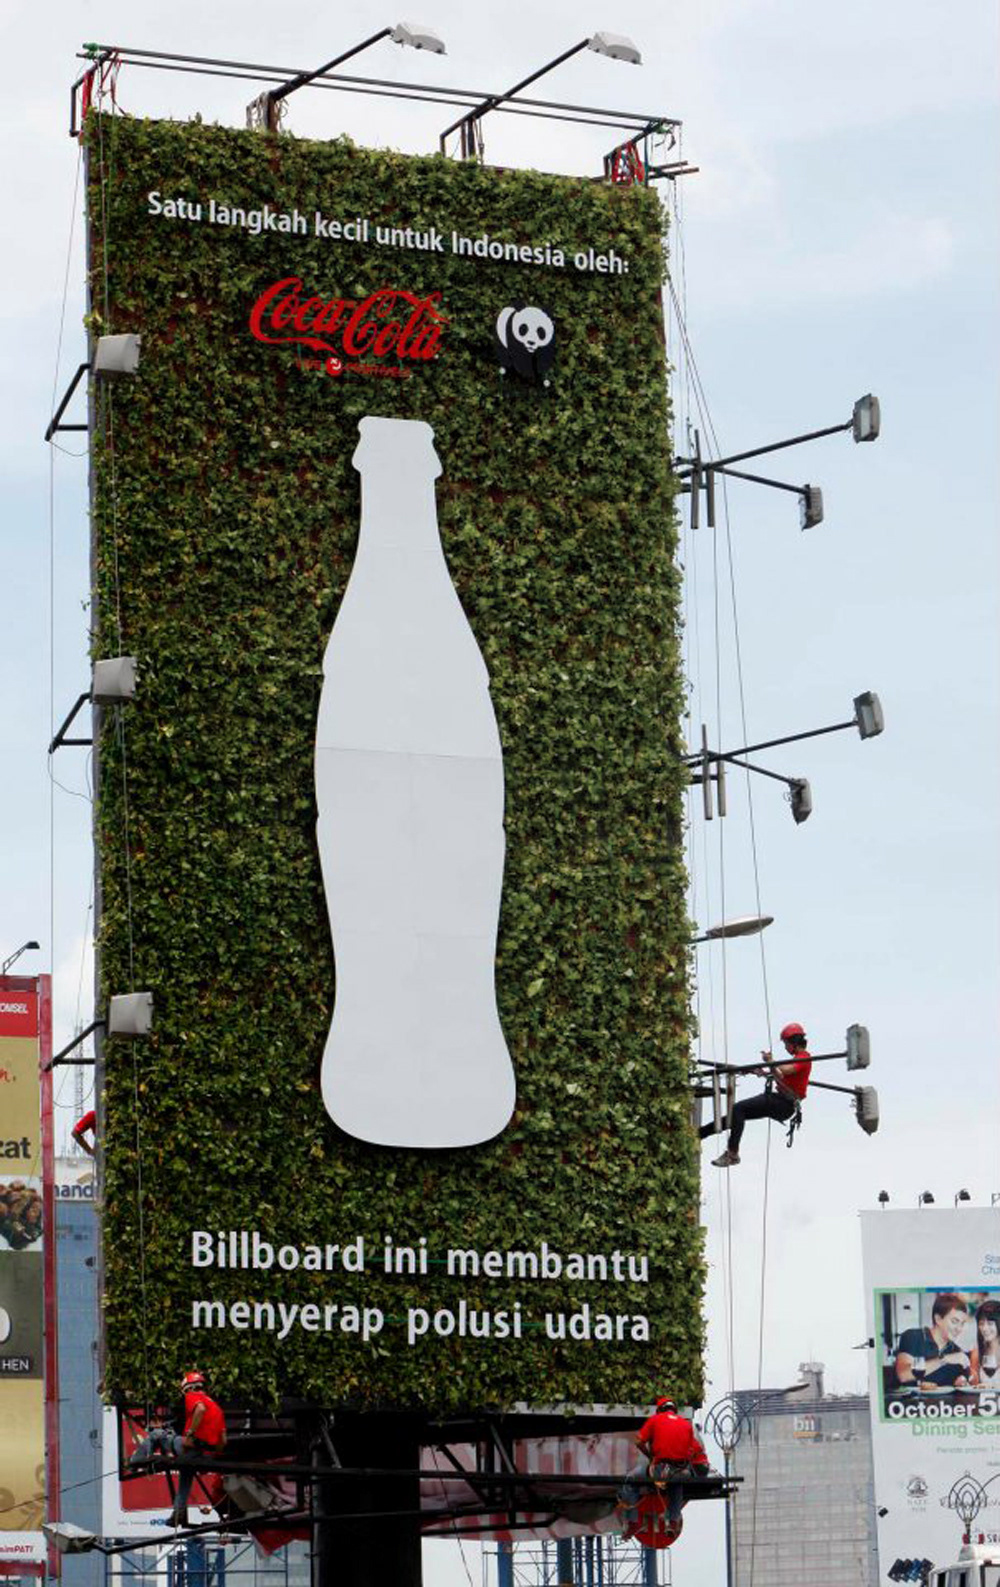 Coca-Cola indonesia